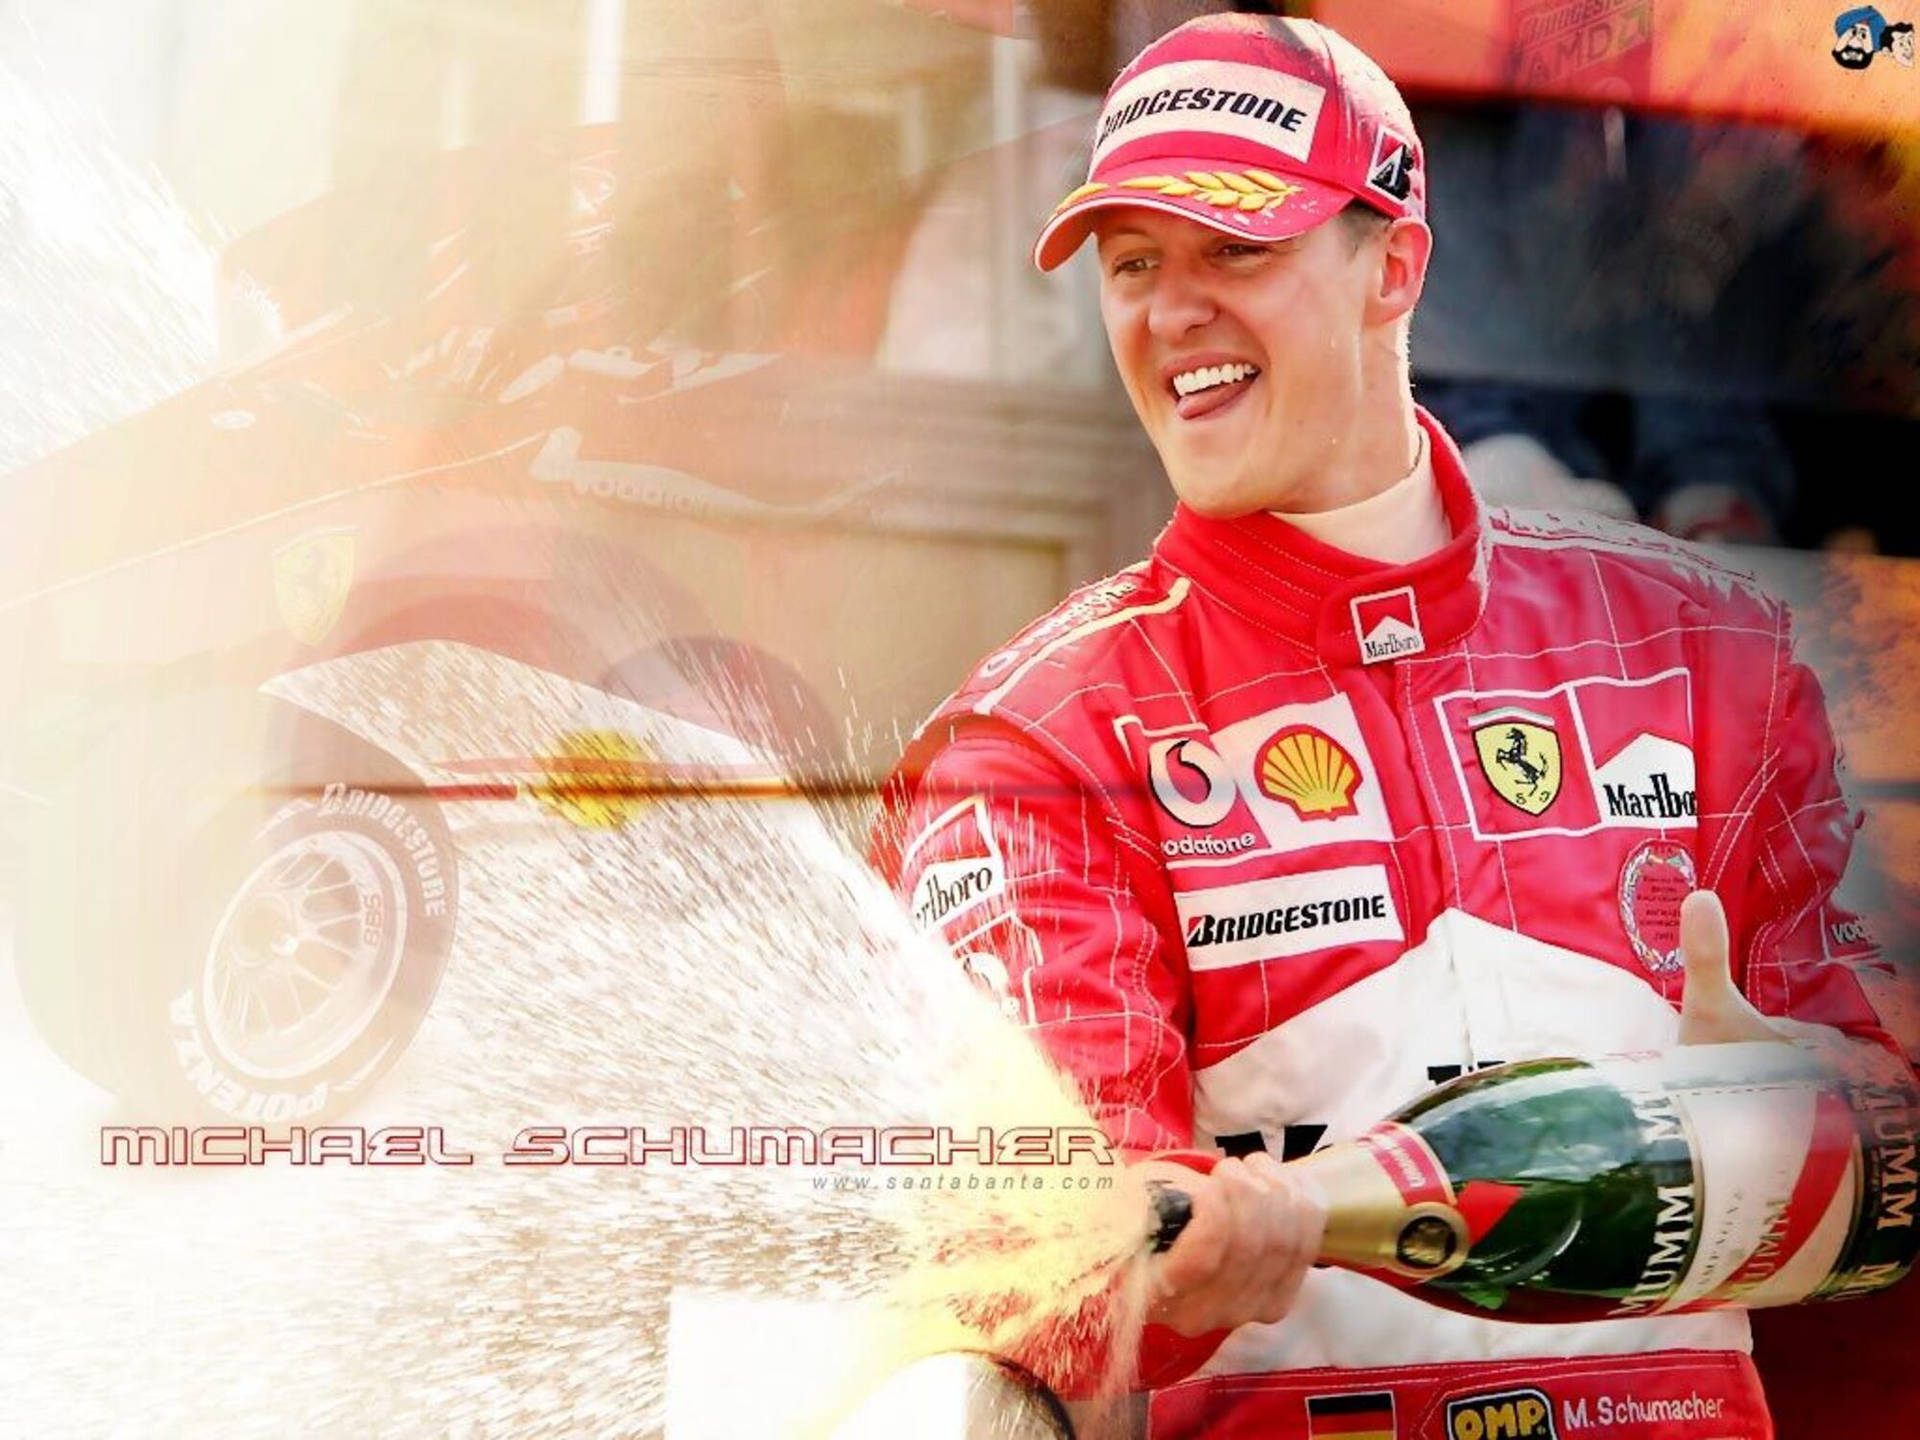 Fun Racer Michael Schumacher